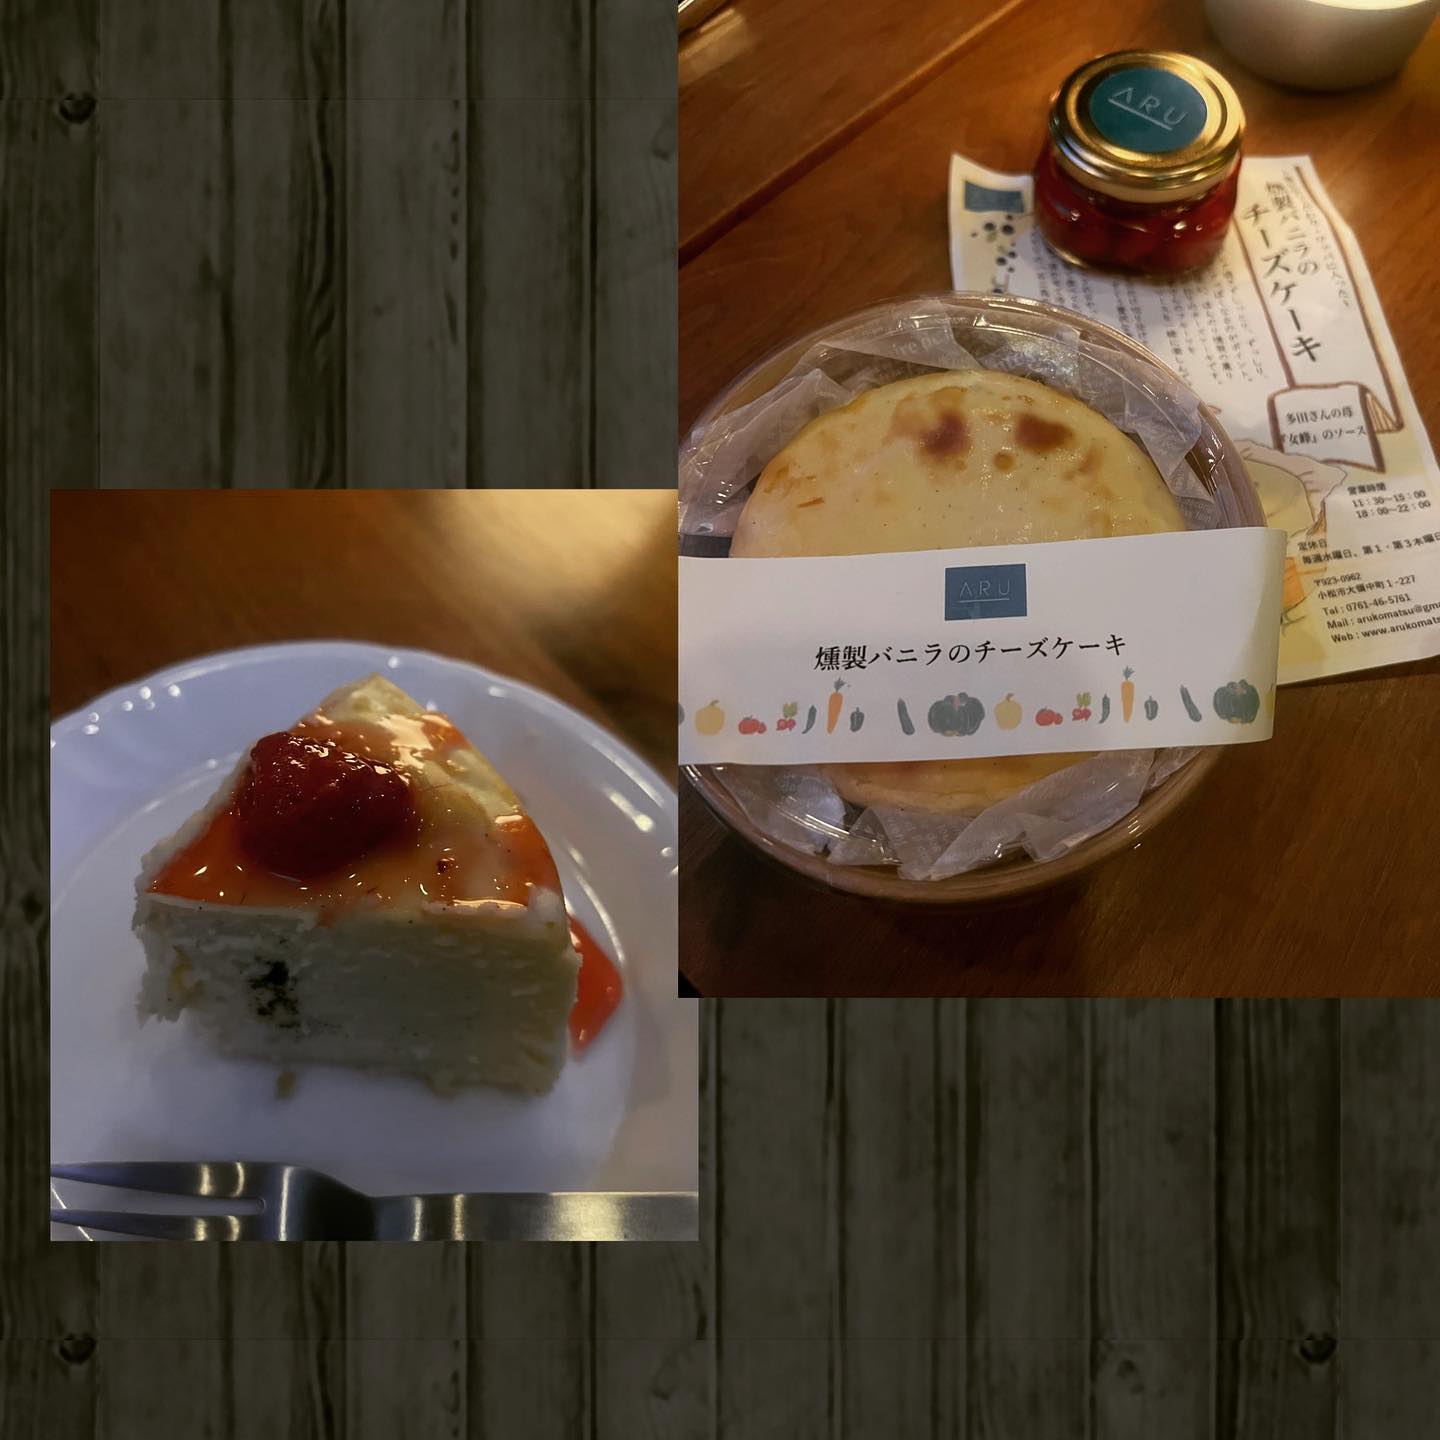 小松市ARUのチーズケーキ小松市にあるイタリアンARUのお持ち帰りチーズケーキ燻製バニラのチーズケーキ苺「女峰」のソースお土産に頂きました♪めっちゃ美味しかったぁーご馳走様でした♪いつもの事だけど…めちゃタイムラグ(笑)#イタリアンARU#小松のARU#お持ち帰りチーズケーキ#イタリアンのチーズケーキ  #letemps #金沢片町#猫好きです#静岡出身です#Cafebar_letemps#カフェバー_るたん#おひとり様でも#友達が増える場所#犀川沿いの夜景#片町カラオケ#歌えるカフェバー#いしかわ新型コロナ対策認証店 - 金沢片町るたん